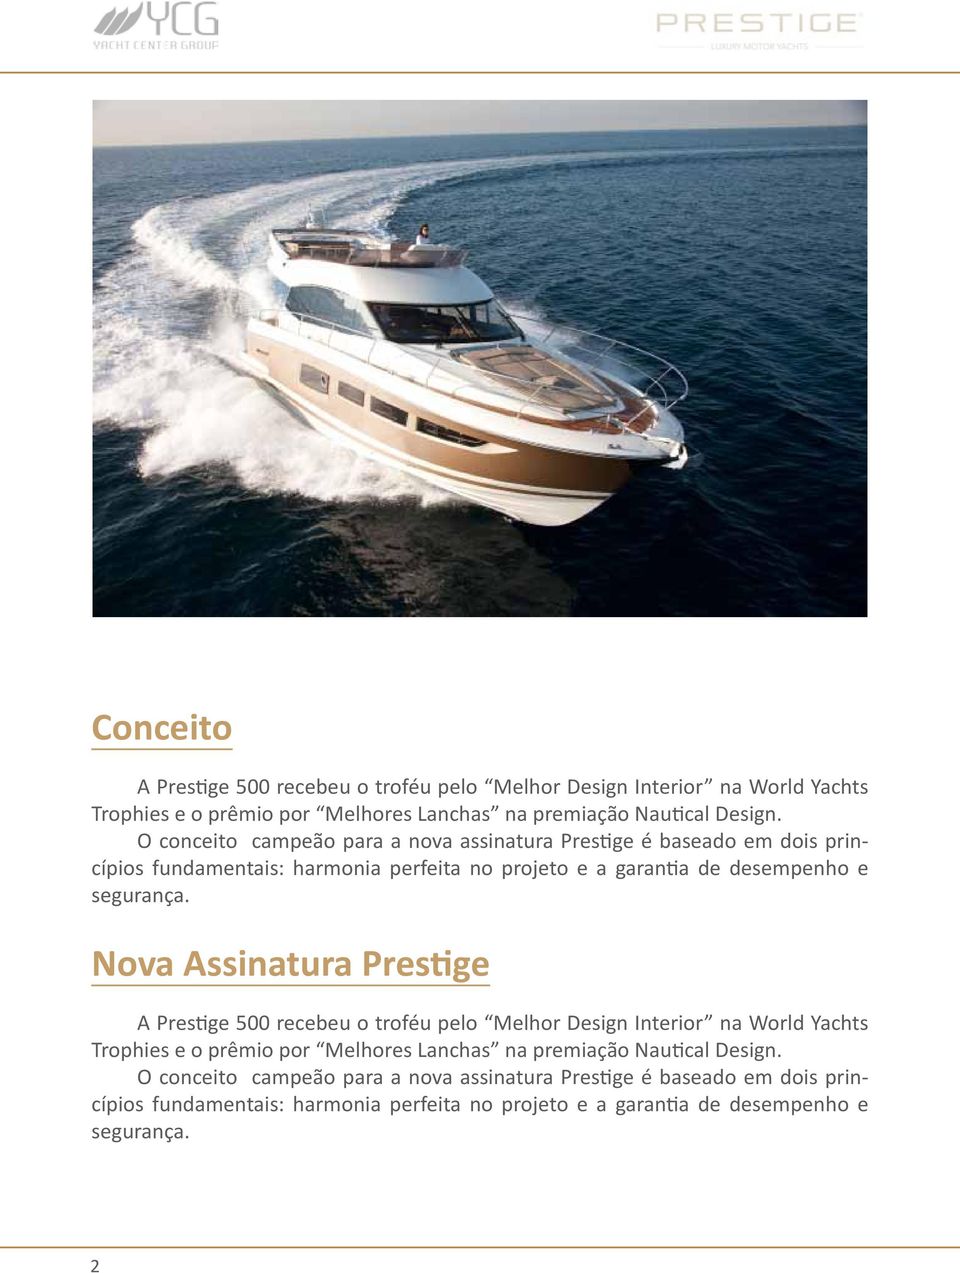 Nova Assinatura Prestige A Prestige 500 recebeu o troféu pelo Melhor Design Interior na World Yachts Trophies e o prêmio por Melhores Lanchas na premiação Nautical